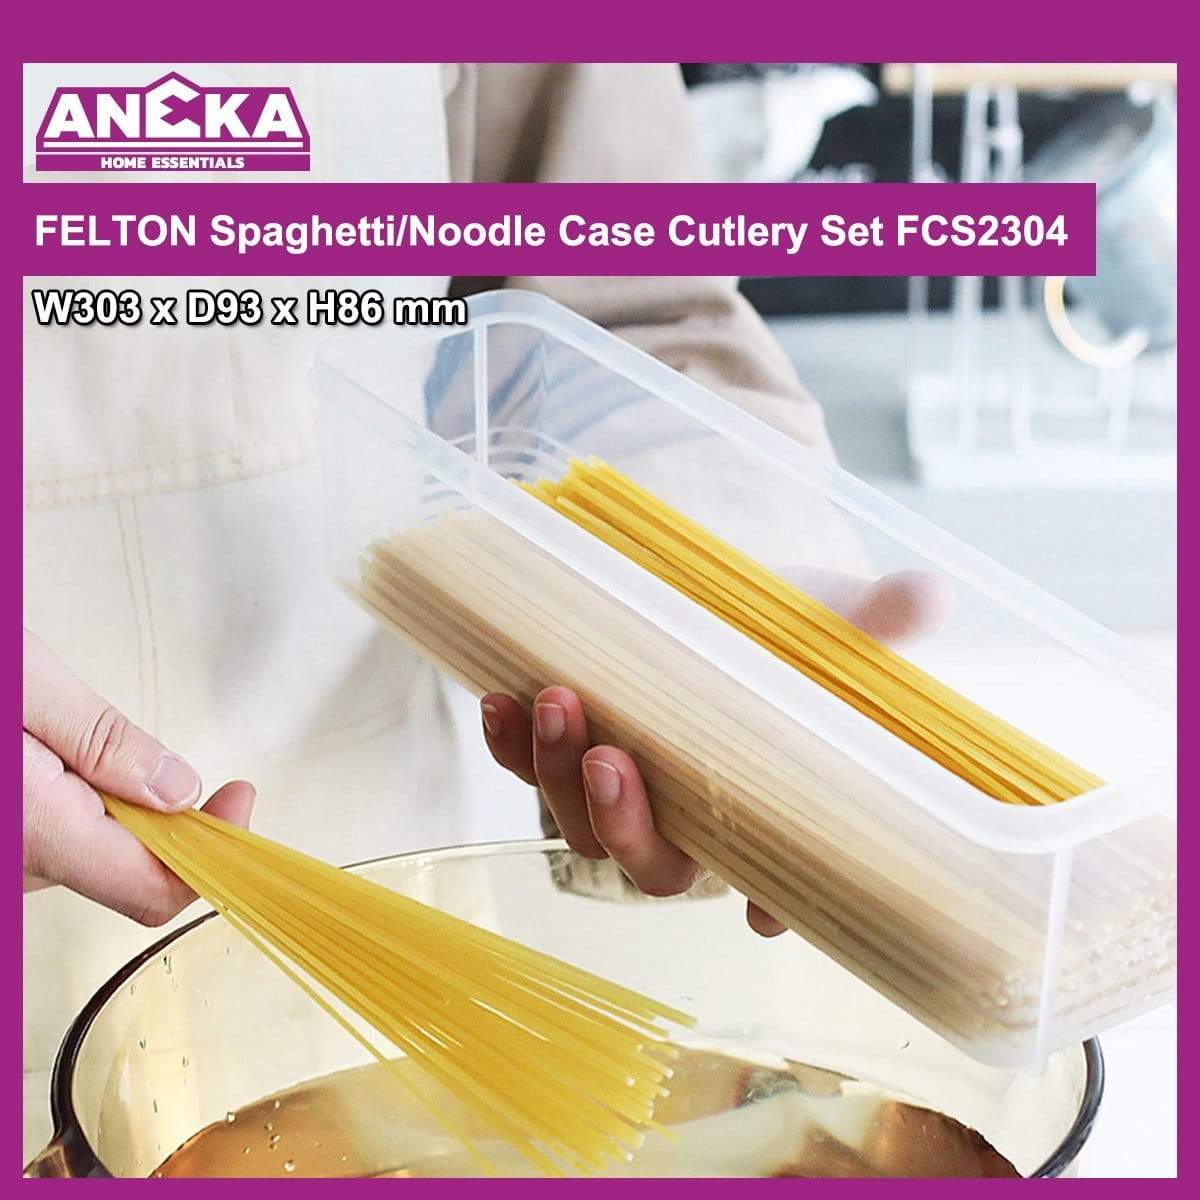 FCS2304 Felton Cutlery/Spaghetti Case